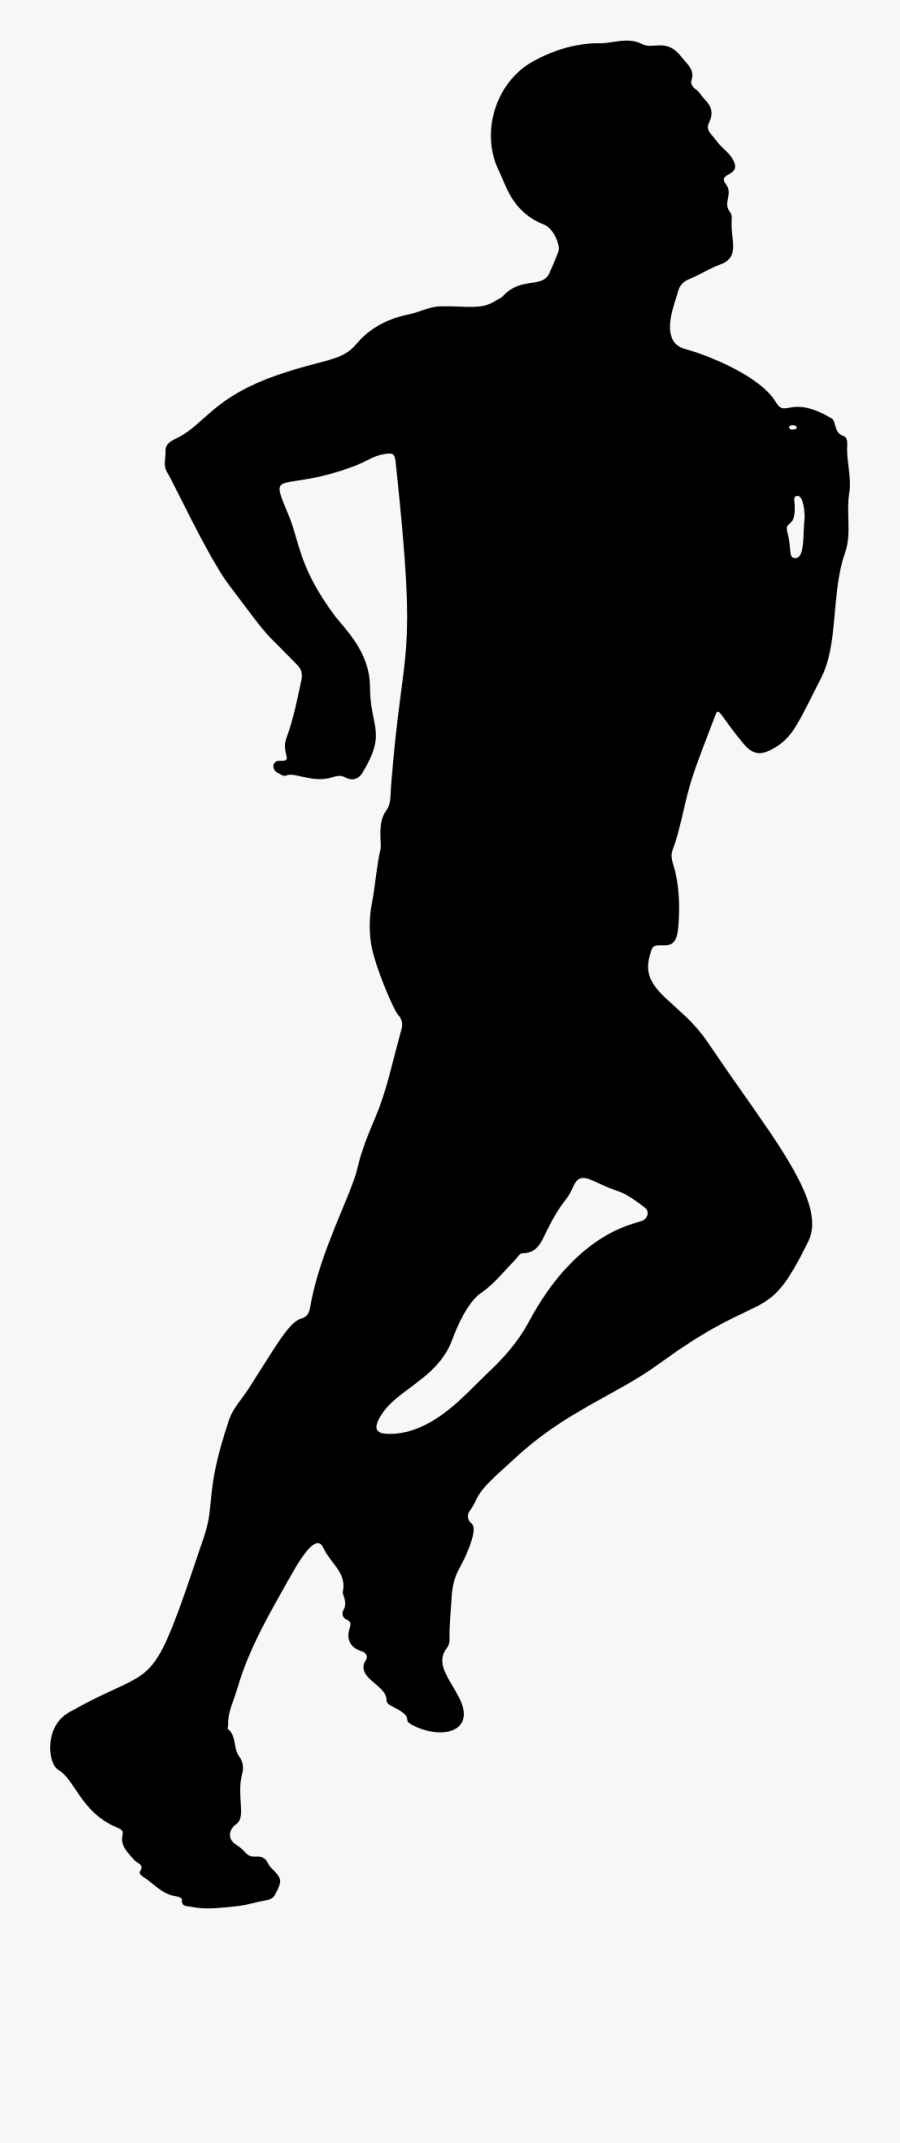 Jogging Man Silhouette - Jogging Silhouette, Transparent Clipart